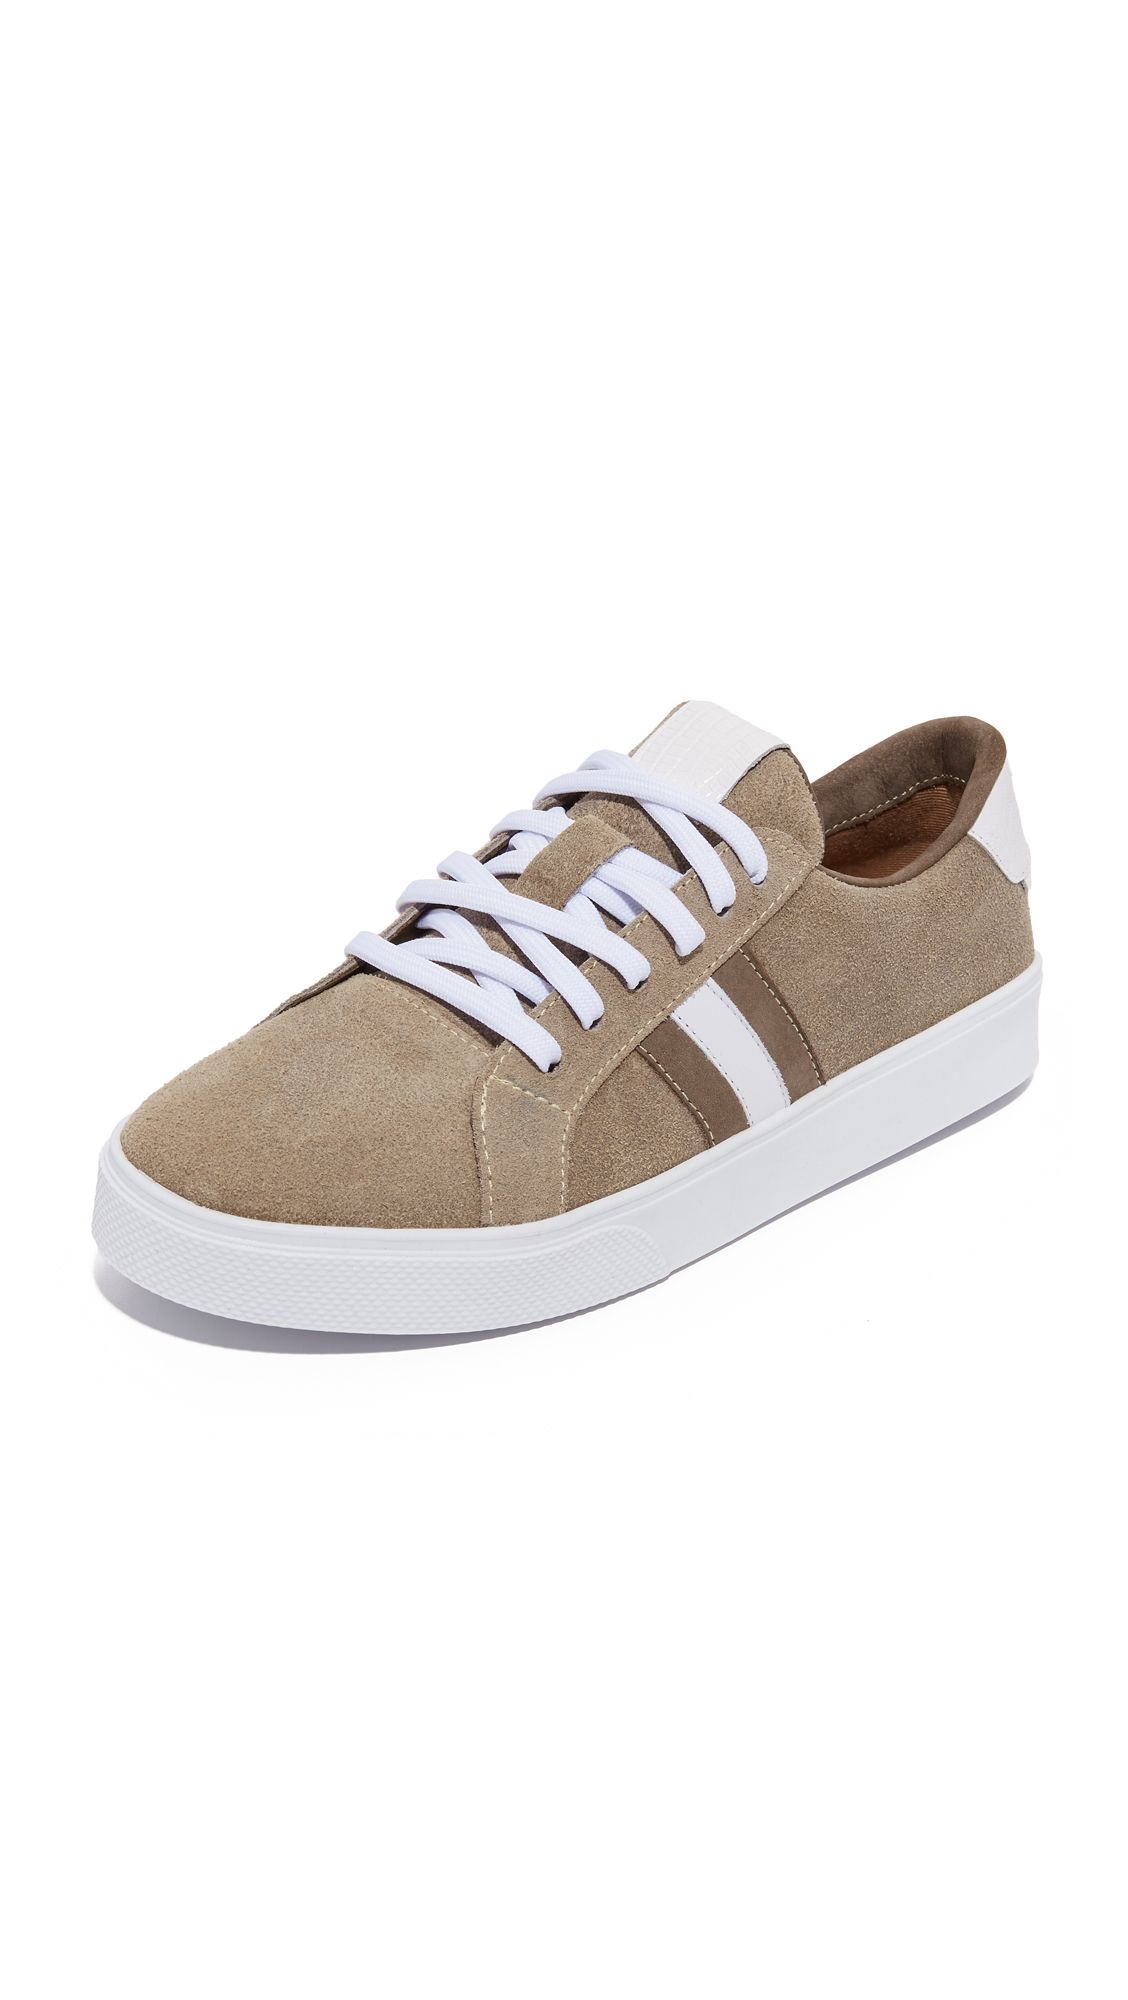 Tatacoa Sneakers | Shopbop